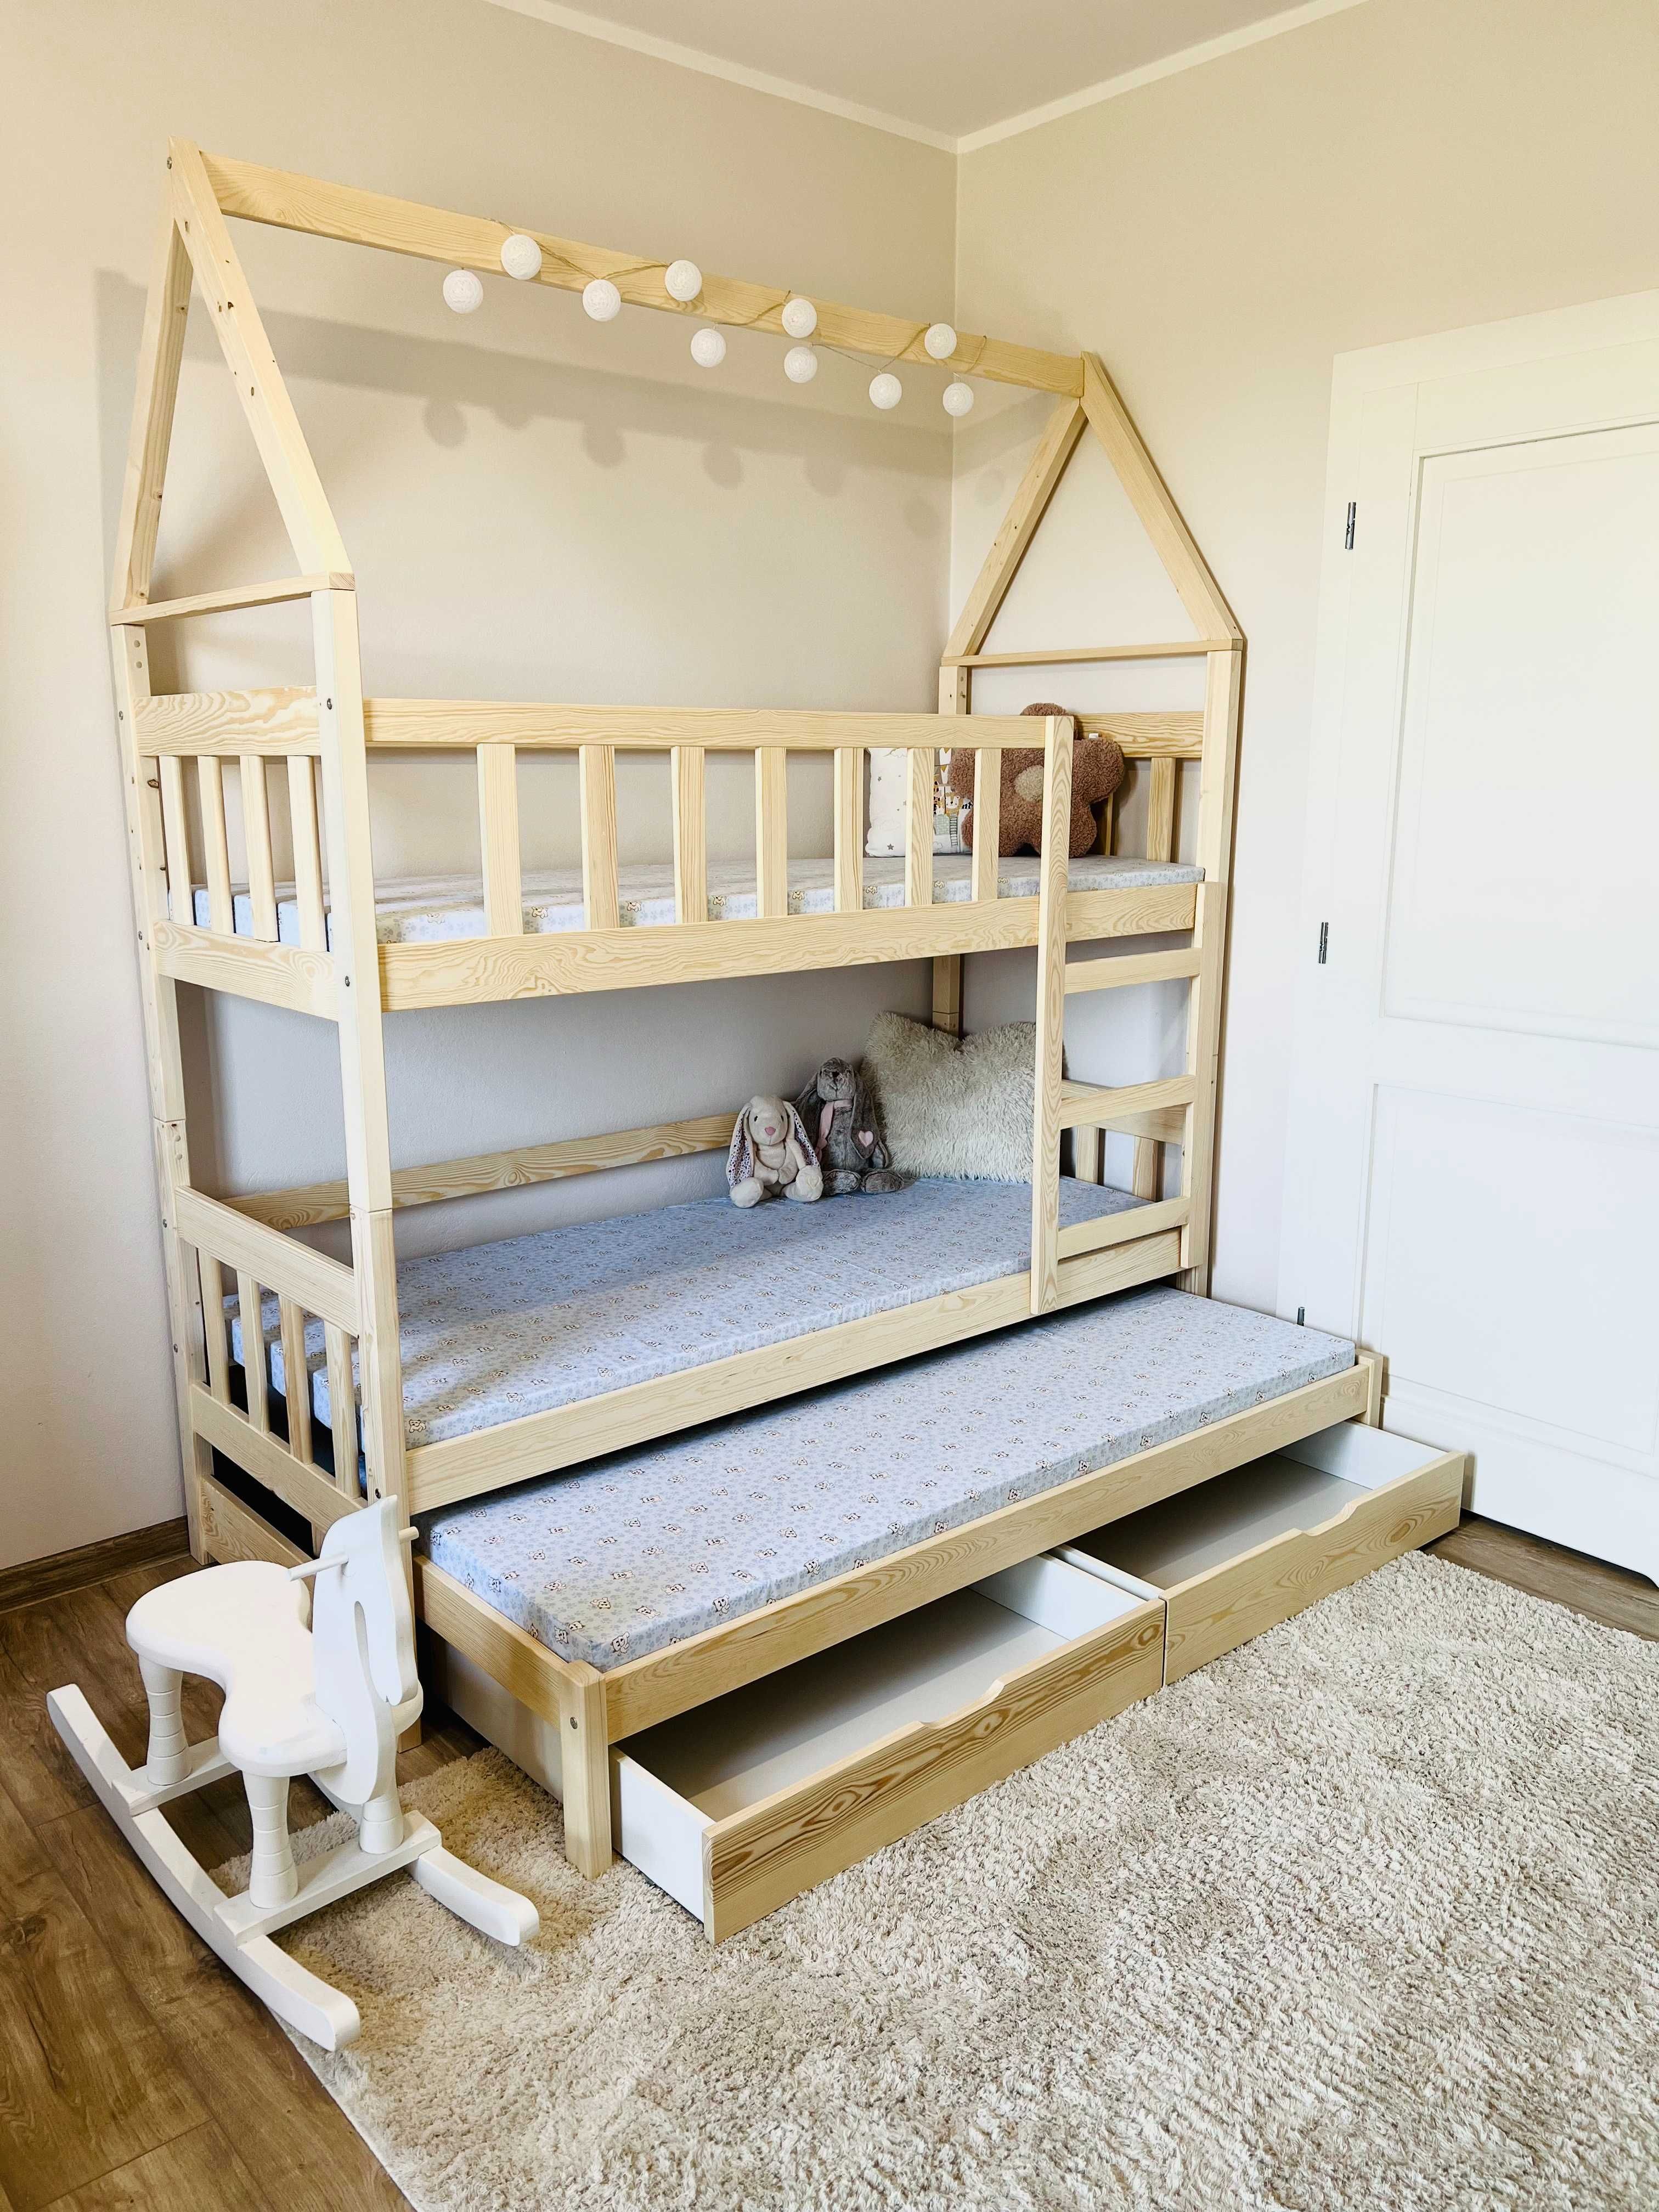 Łóżko piętrowe dla dzieci DOMEK 3 osobowe, materace 160x75 lub 180x75